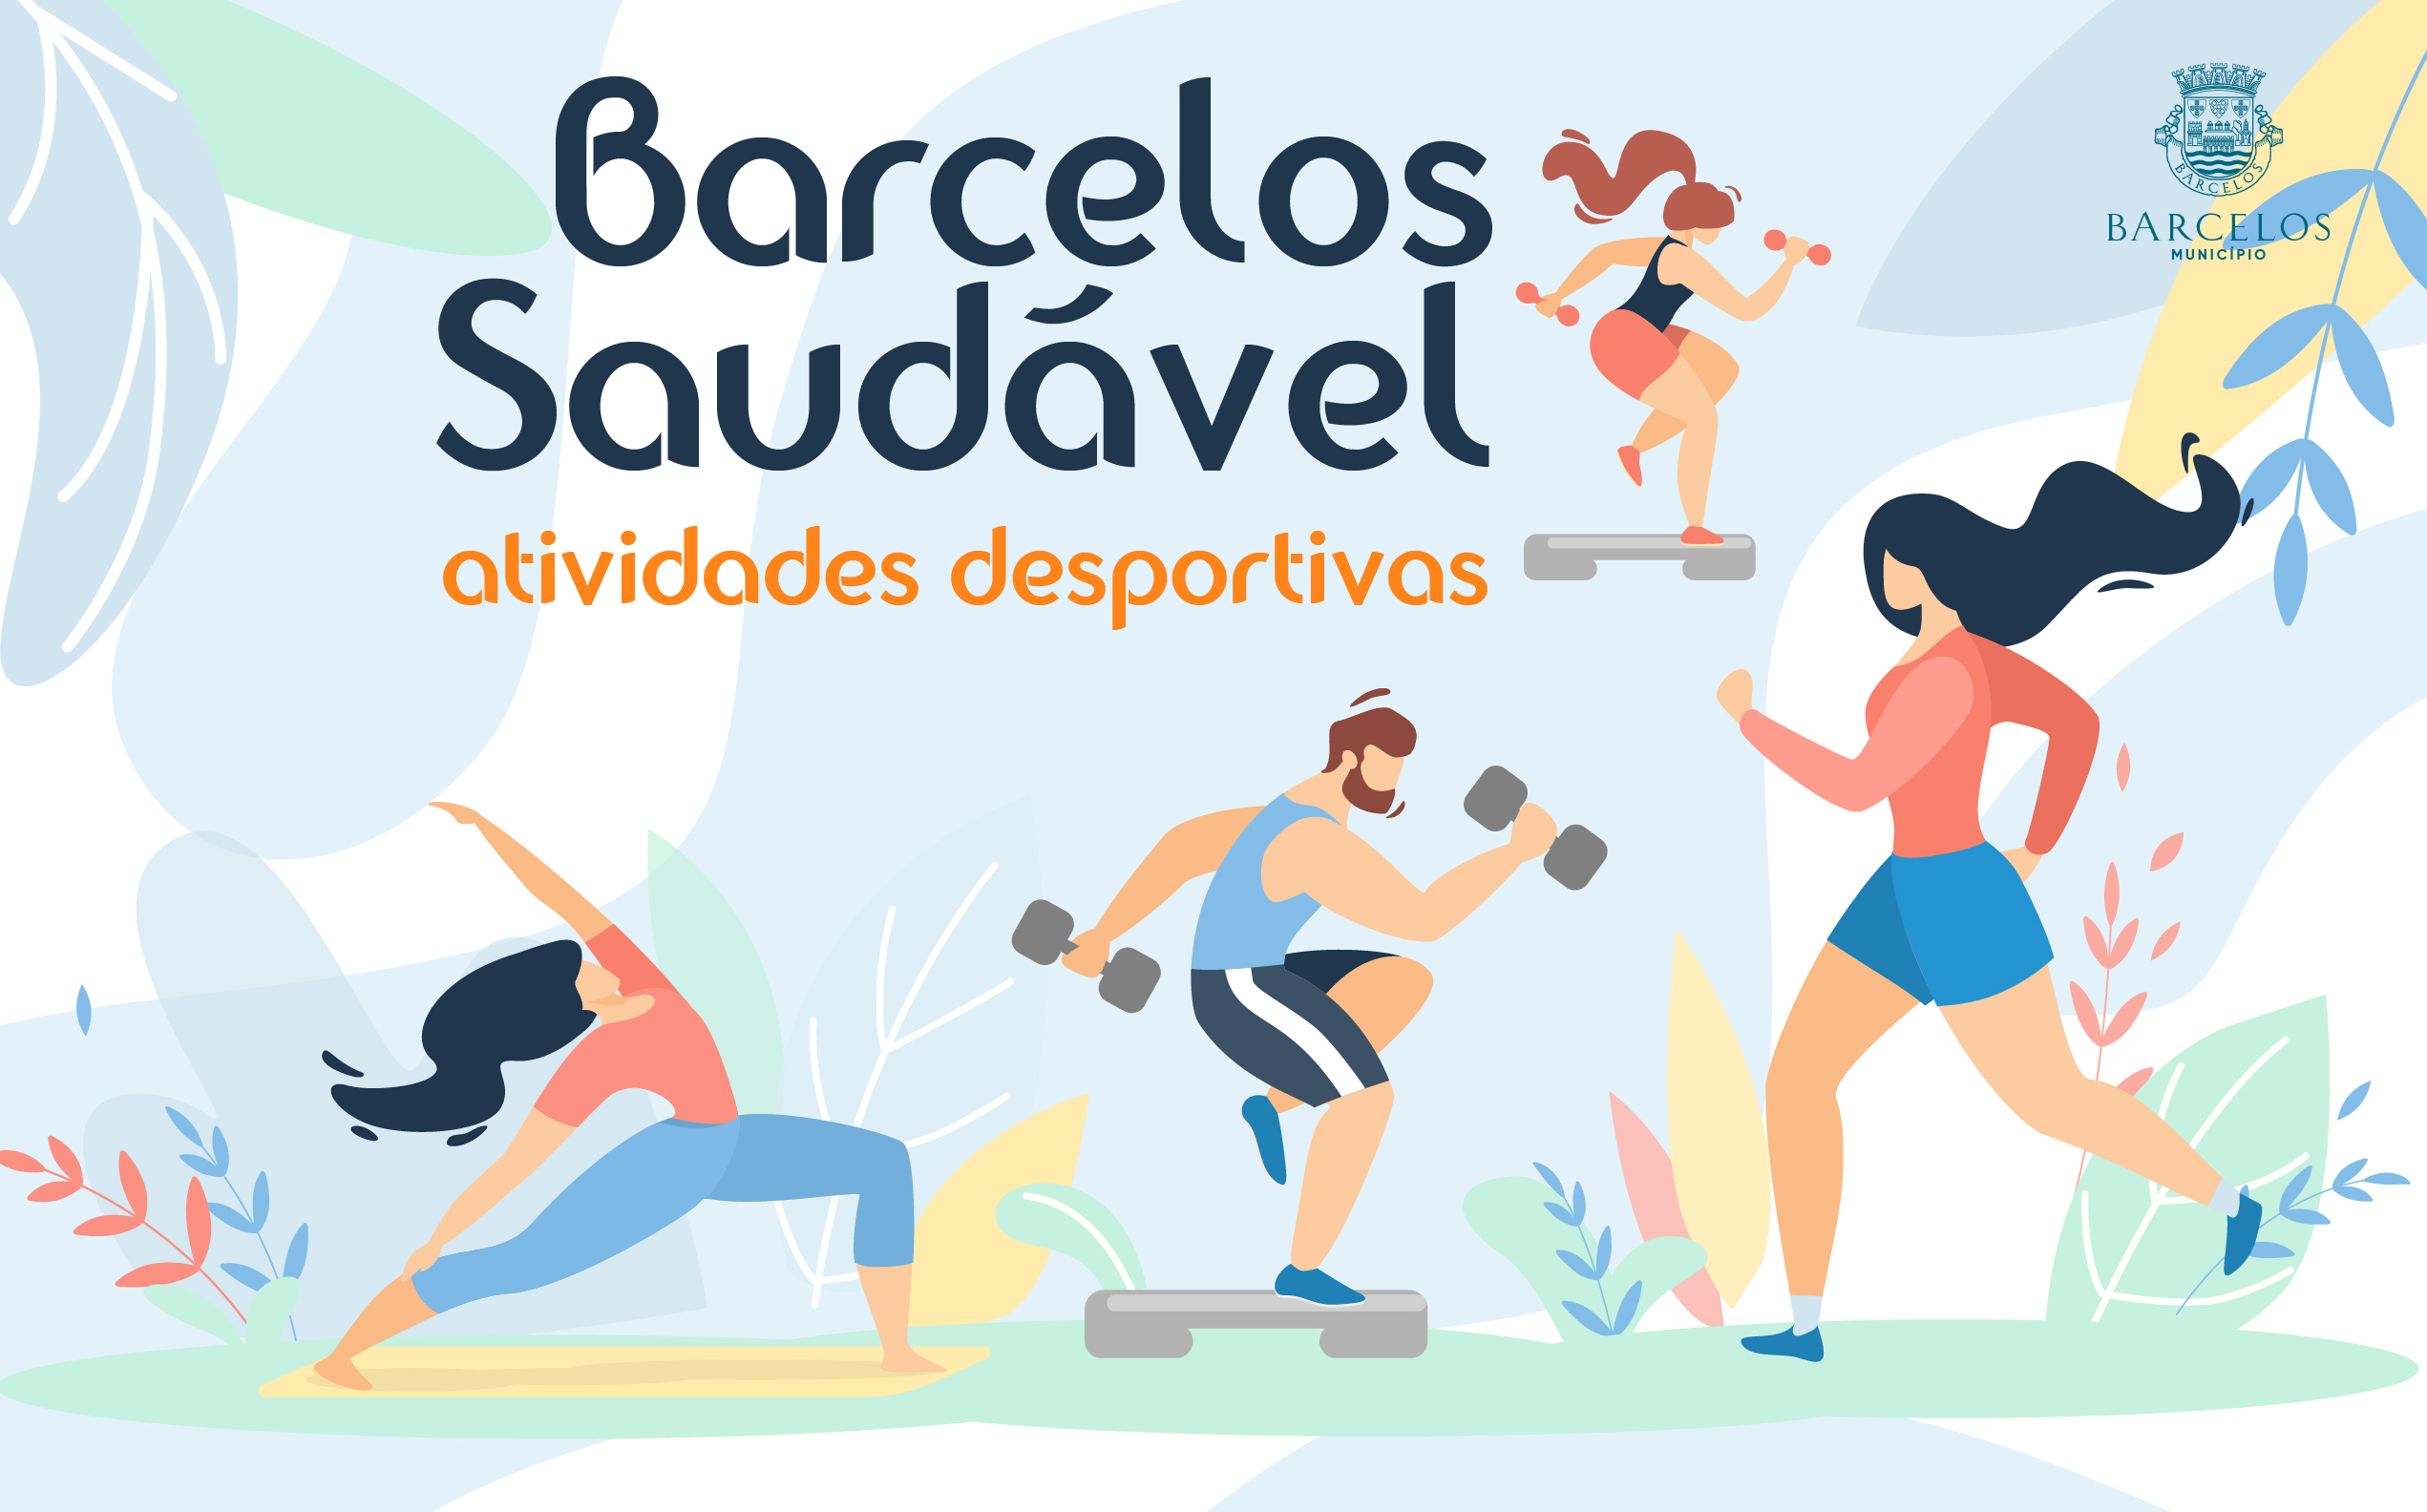 Município de Barcelos retoma atividades do Barcelos Saudável